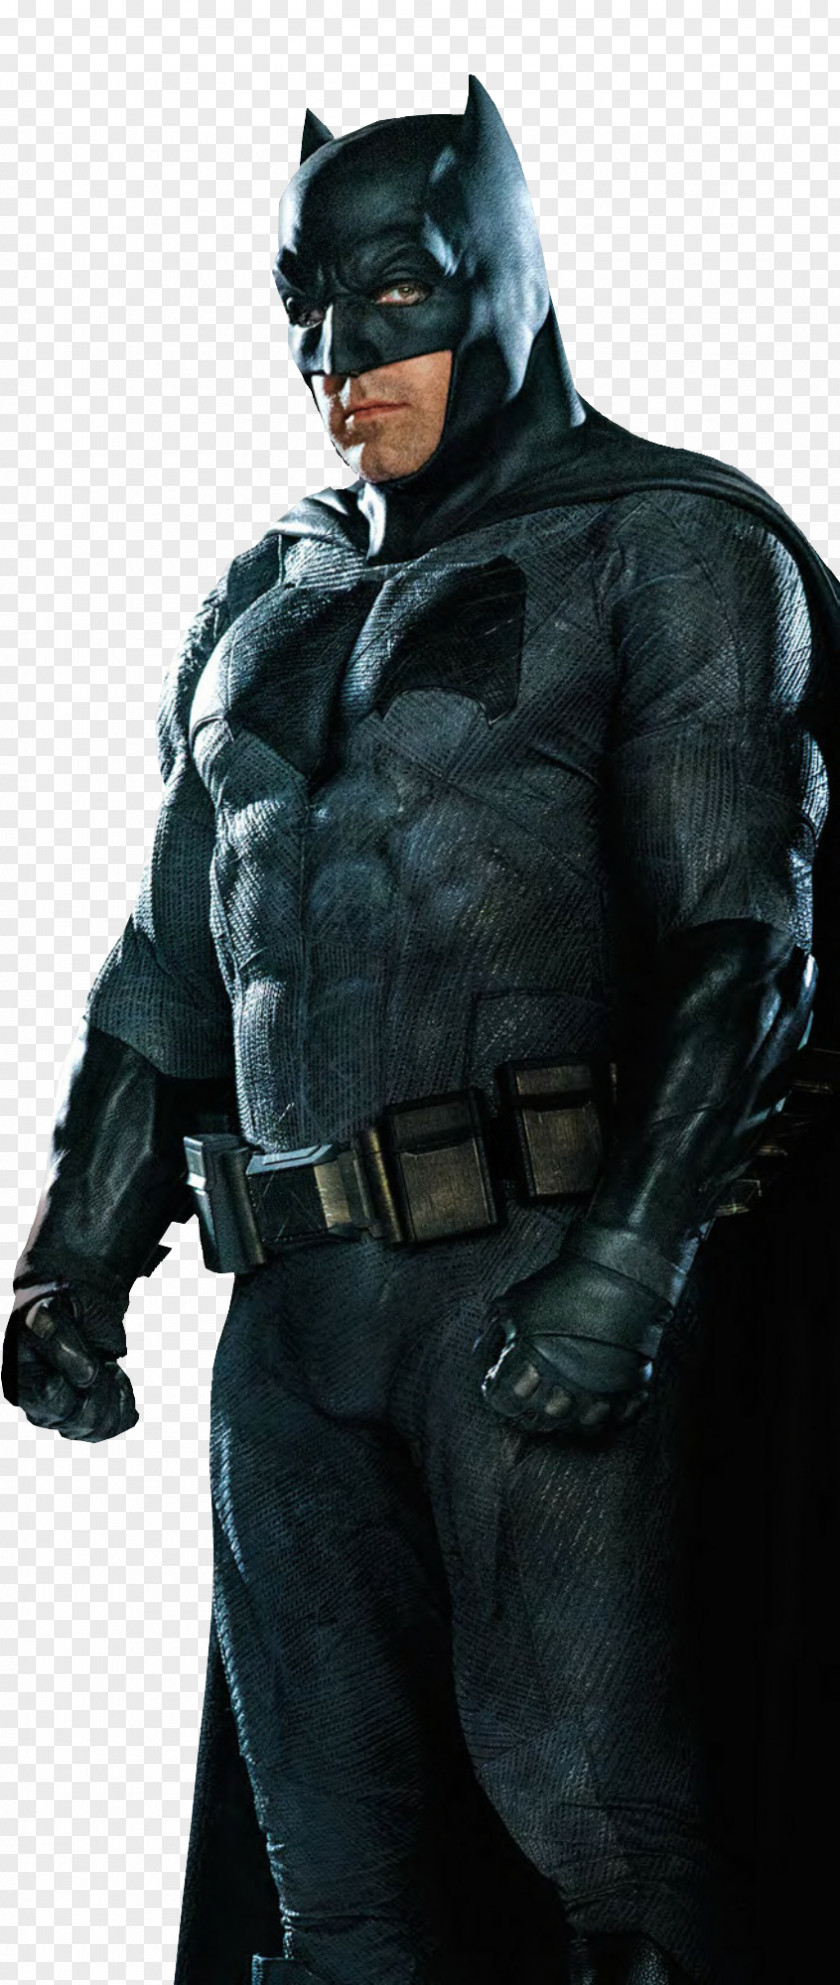 Black Panther Superman/Batman Batsuit Film PNG